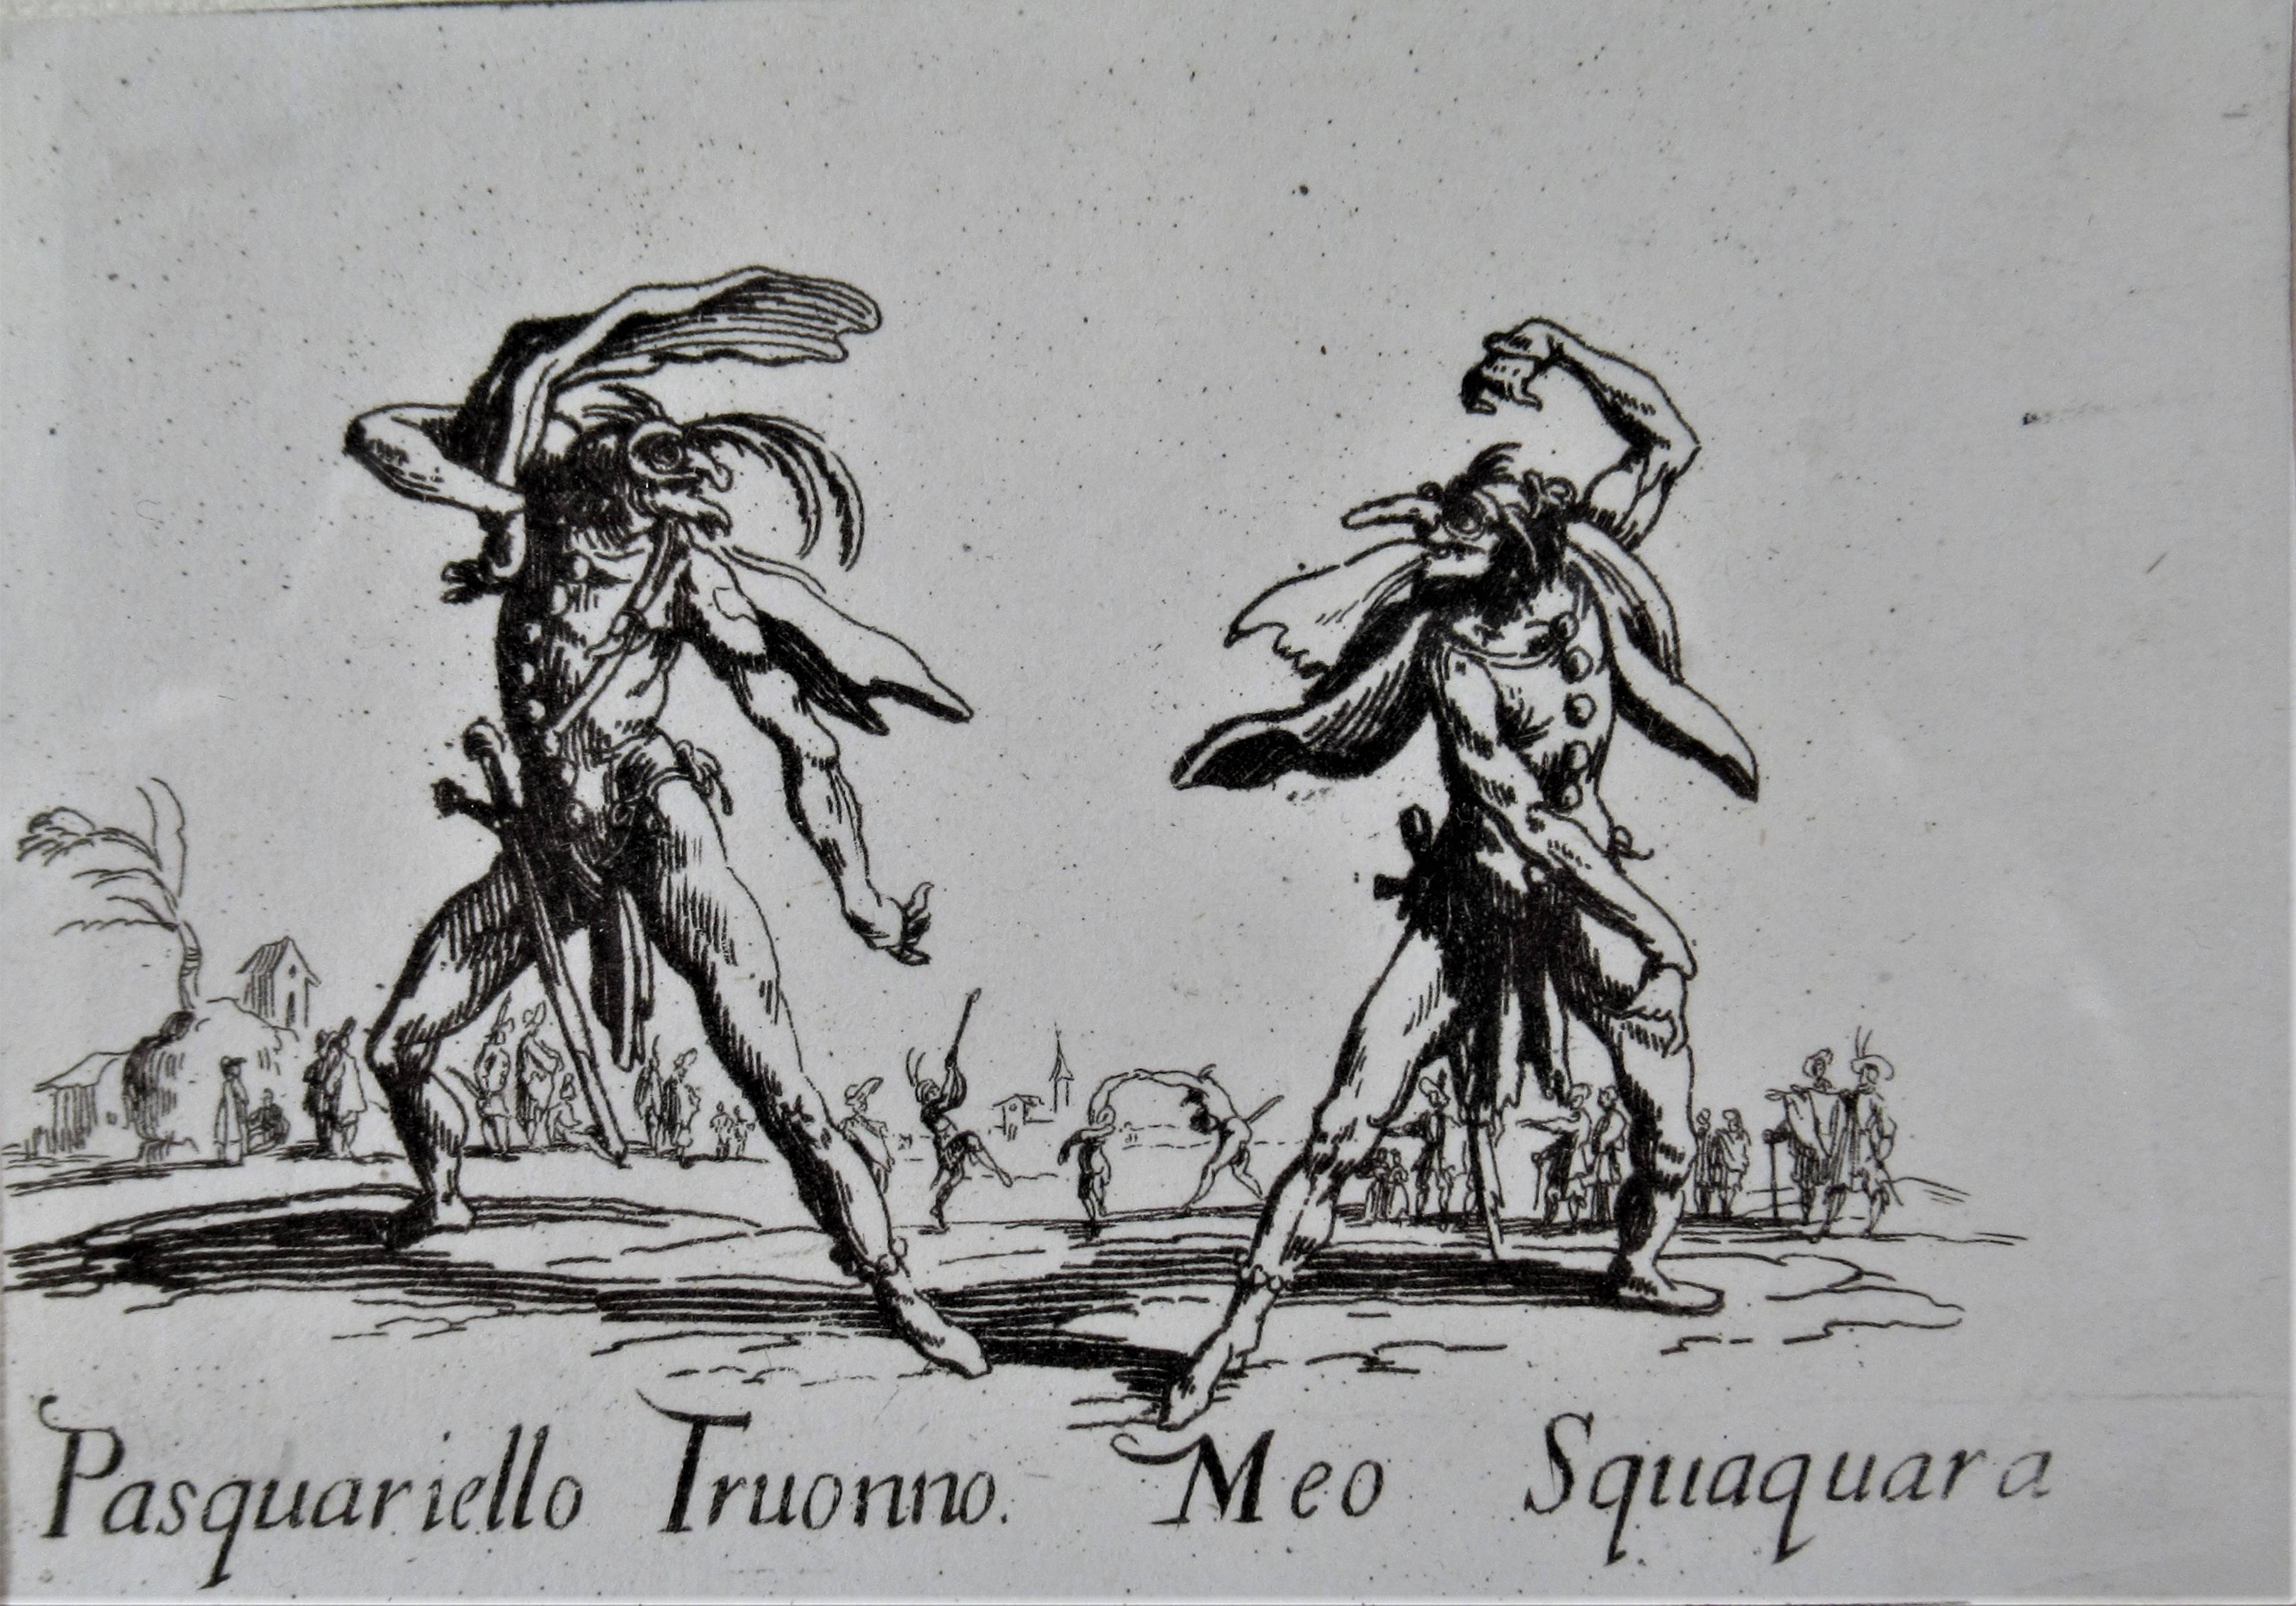 Pasquariello Truonno, Meo Squaquara  - Print de Jacques Callot